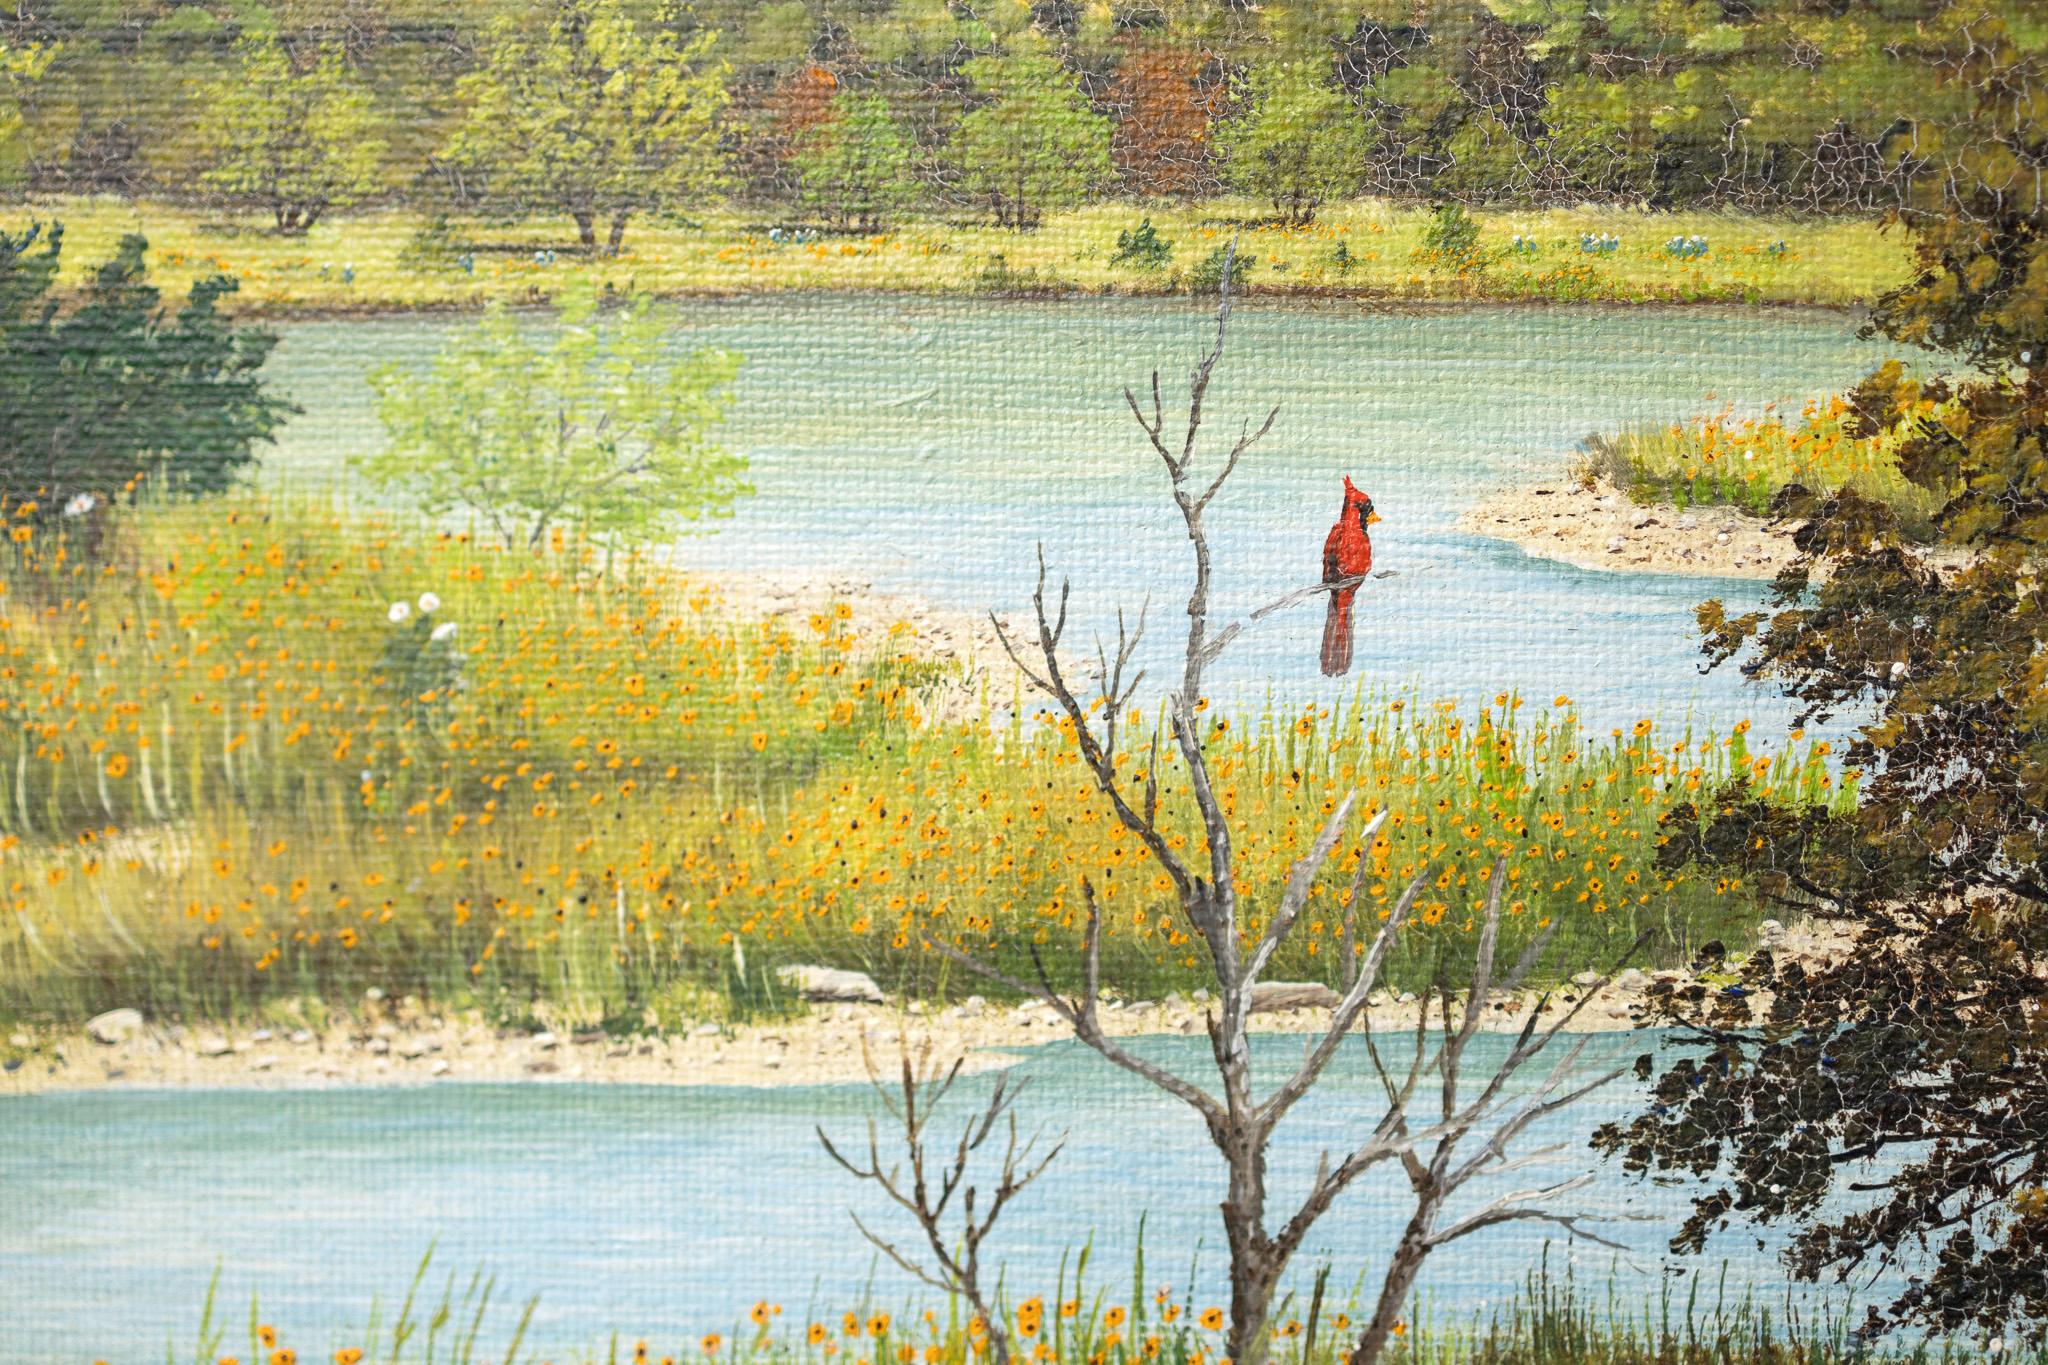 Cette peinture joyeuse de l'artiste texan Manuel Garza représente une vue d'une rivière sinueuse au printemps avec des fleurs sauvages jaunes. Un cardinal rouge vif est perché au sommet d'une branche, admirant le paysage texan. 
9 x 12 pouces
Huile